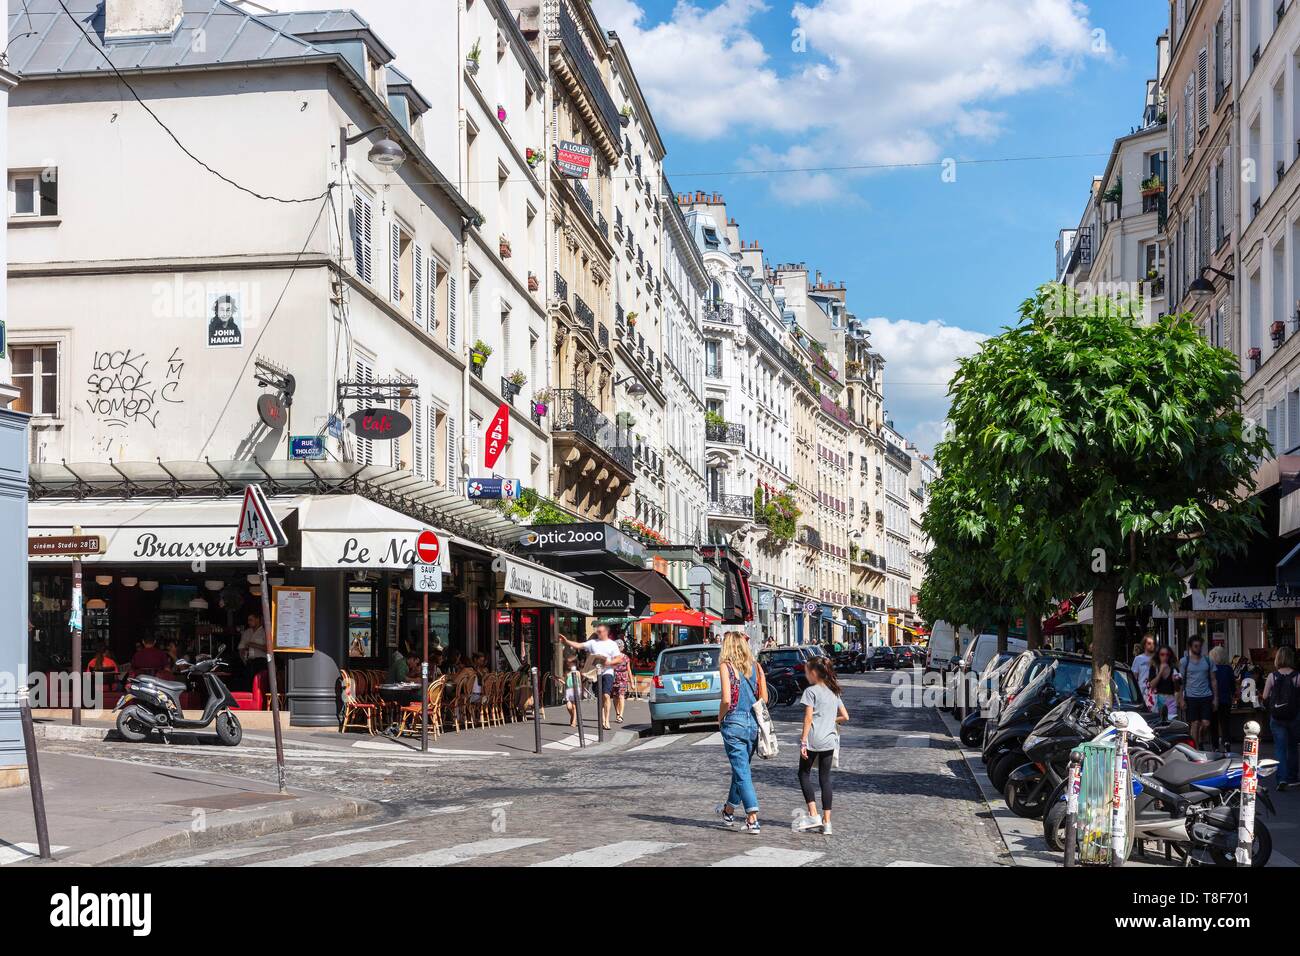 France, Paris, 18th District, Rue des Abbesses Stock Photo - Alamy